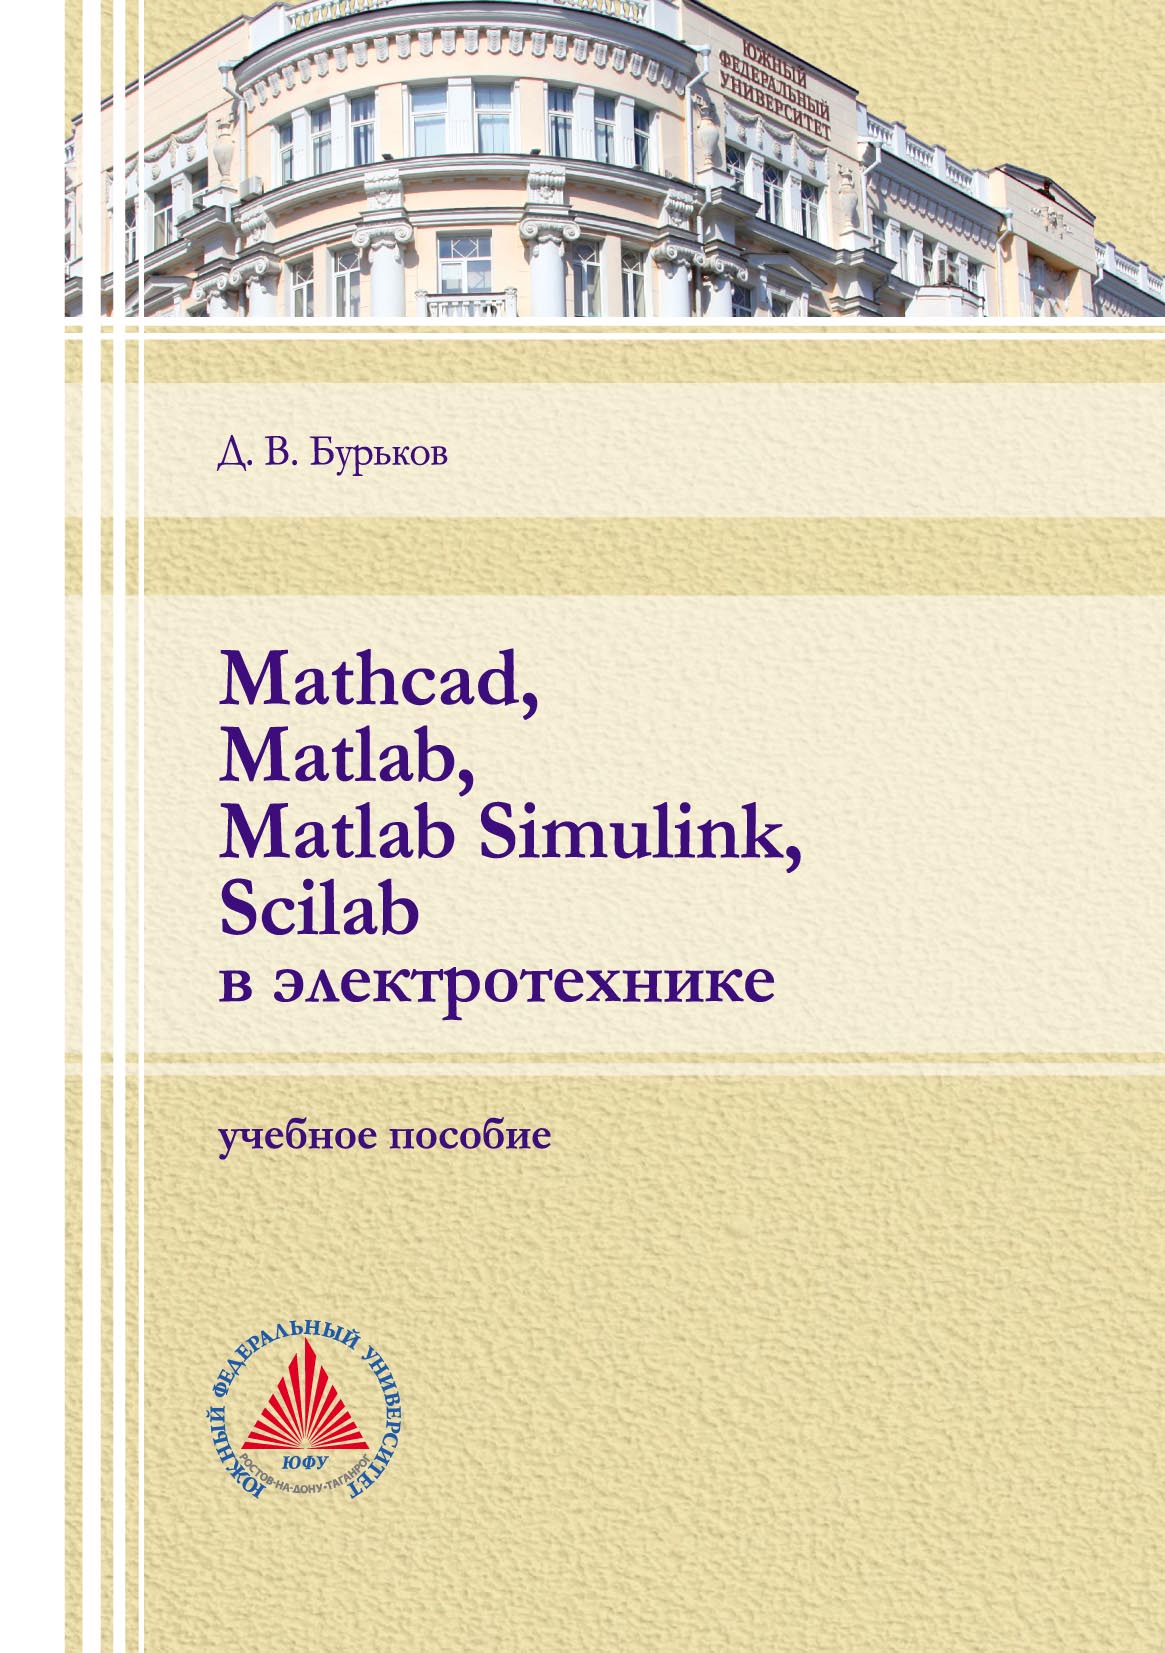 Книга  Mathcad, Matlab, Matlab Simulink, Scilab в электротехнике созданная Д. В. Бурьков может относится к жанру машиностроение, приборостроение, программы, проектирование, учебники и пособия для вузов. Стоимость электронной книги Mathcad, Matlab, Matlab Simulink, Scilab в электротехнике с идентификатором 67711188 составляет 256.00 руб.